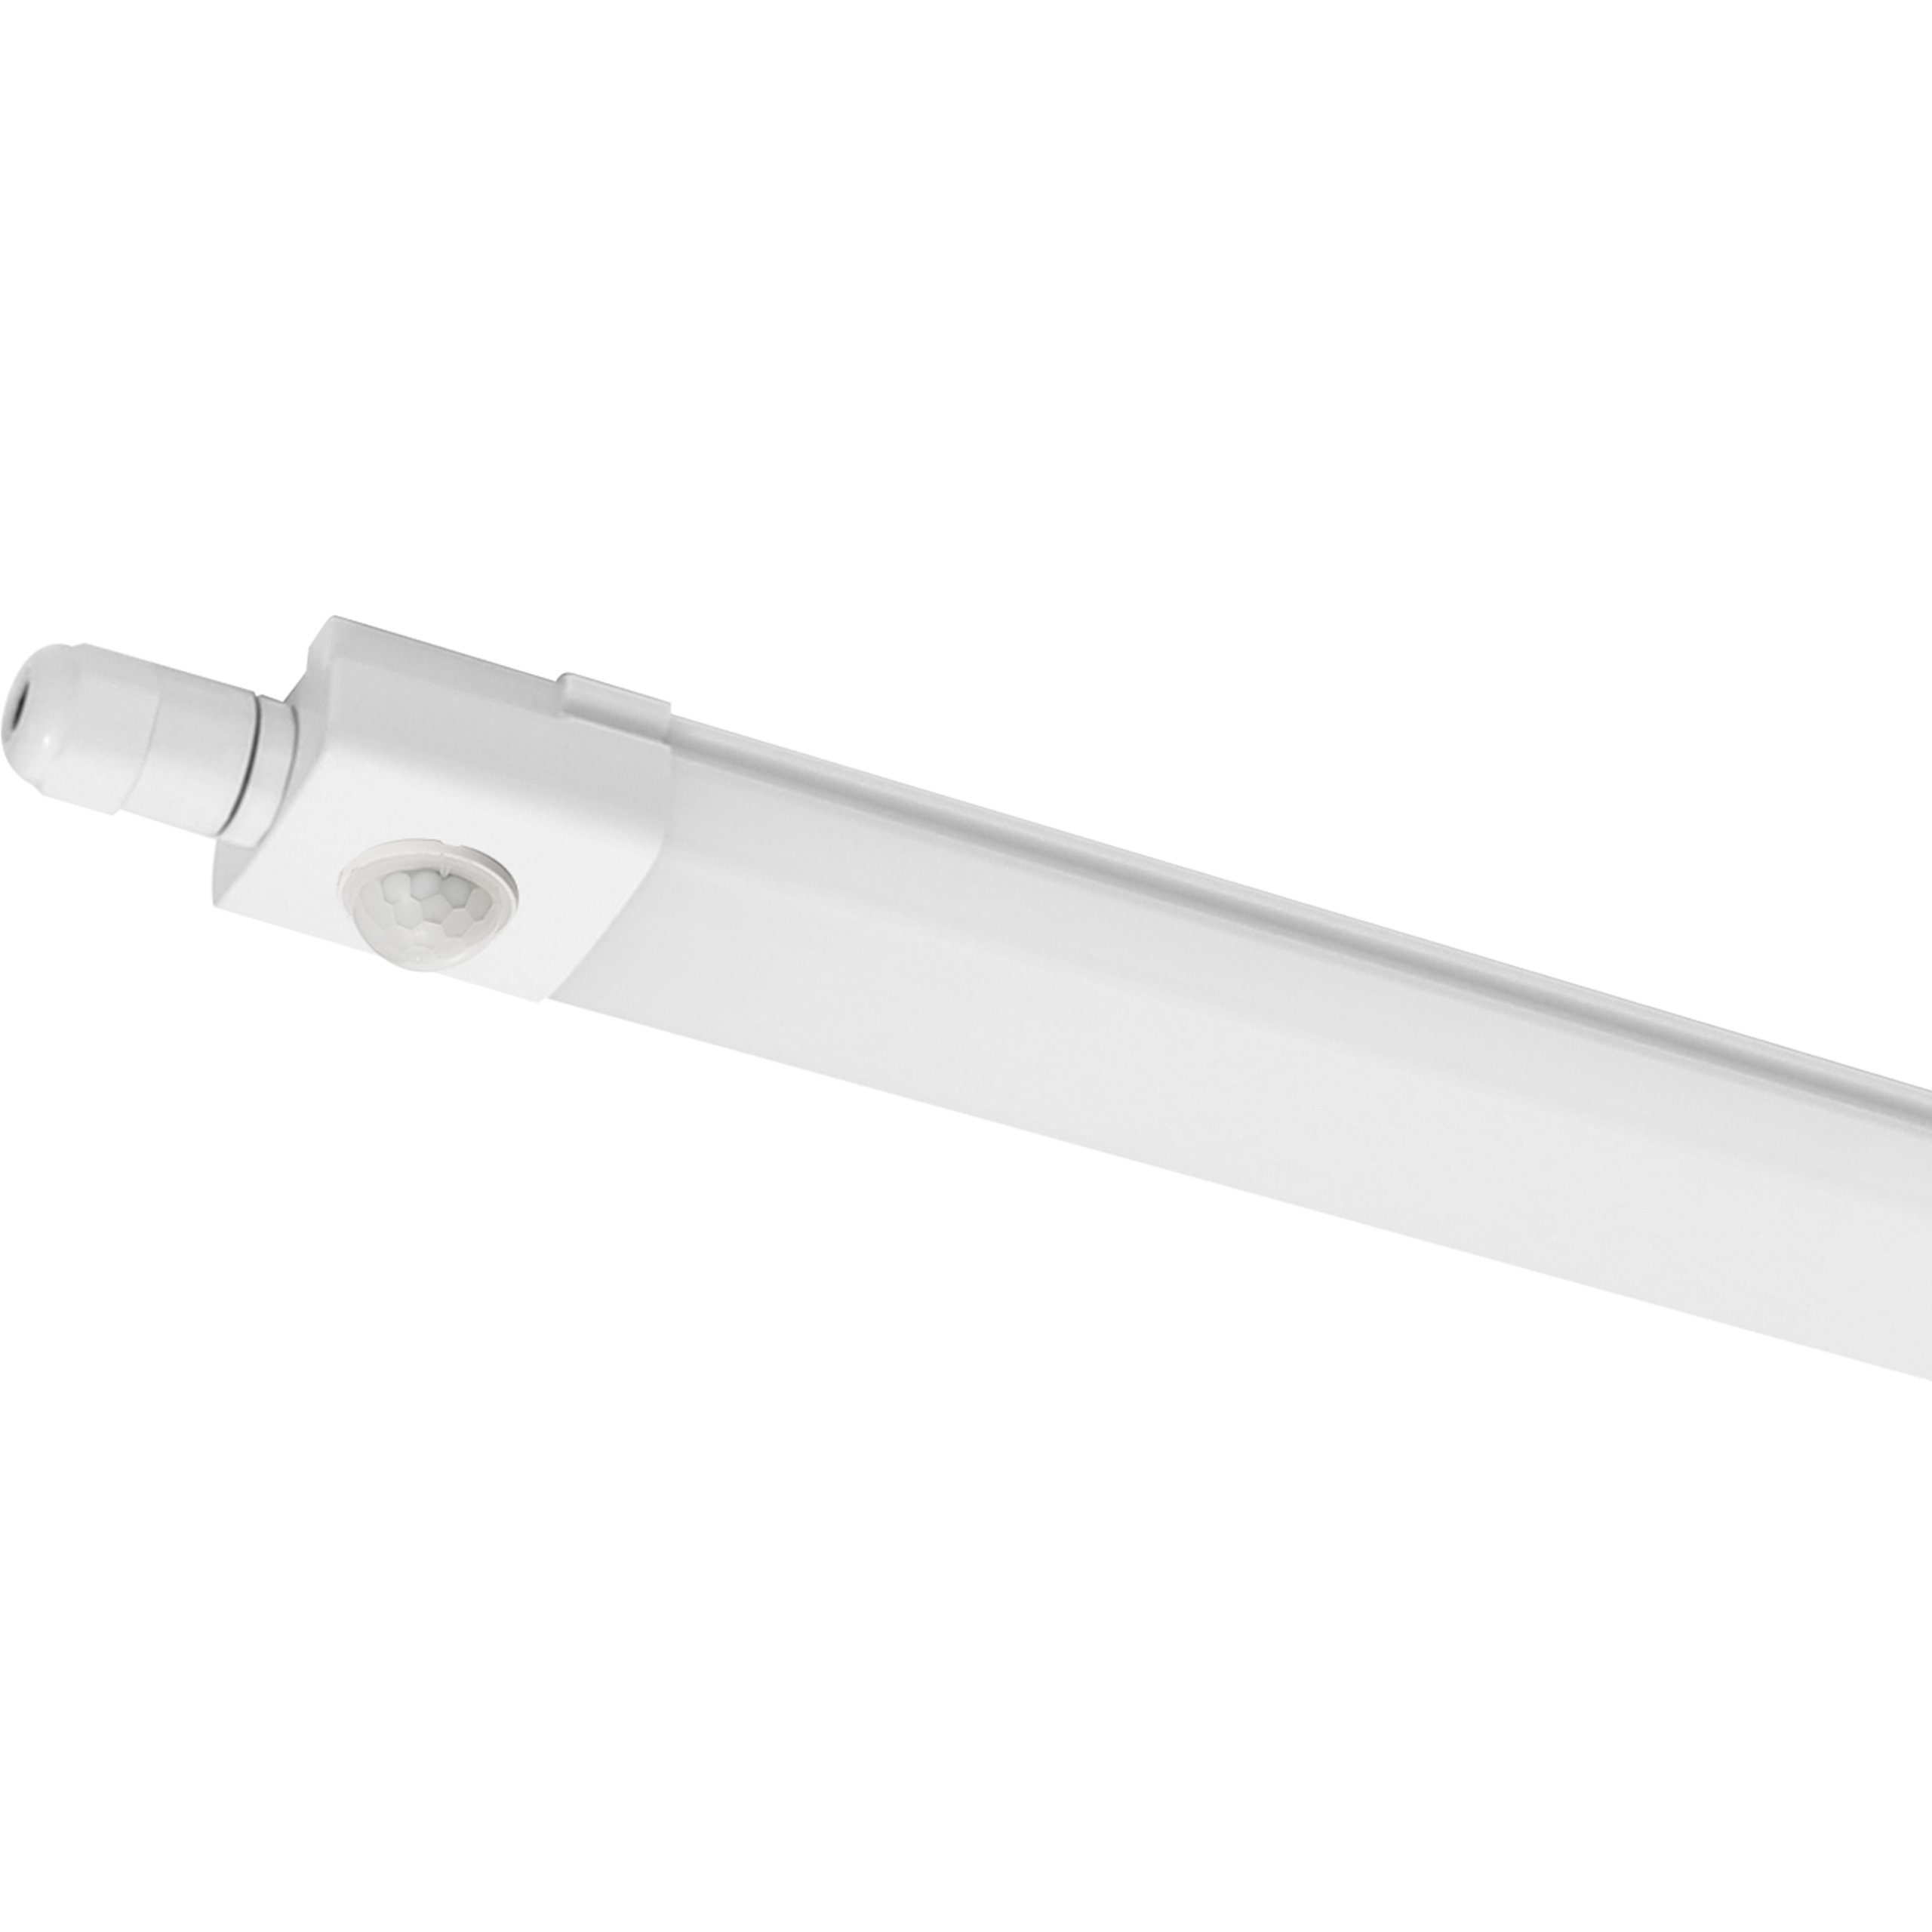 LED's light LED Deckenleuchte 2400493 LED-Feuchtraumleuchte, LED, mit PIR-Bewegungsmelder 120 cm 30 Watt neutralweiß IP65 | Deckenlampen